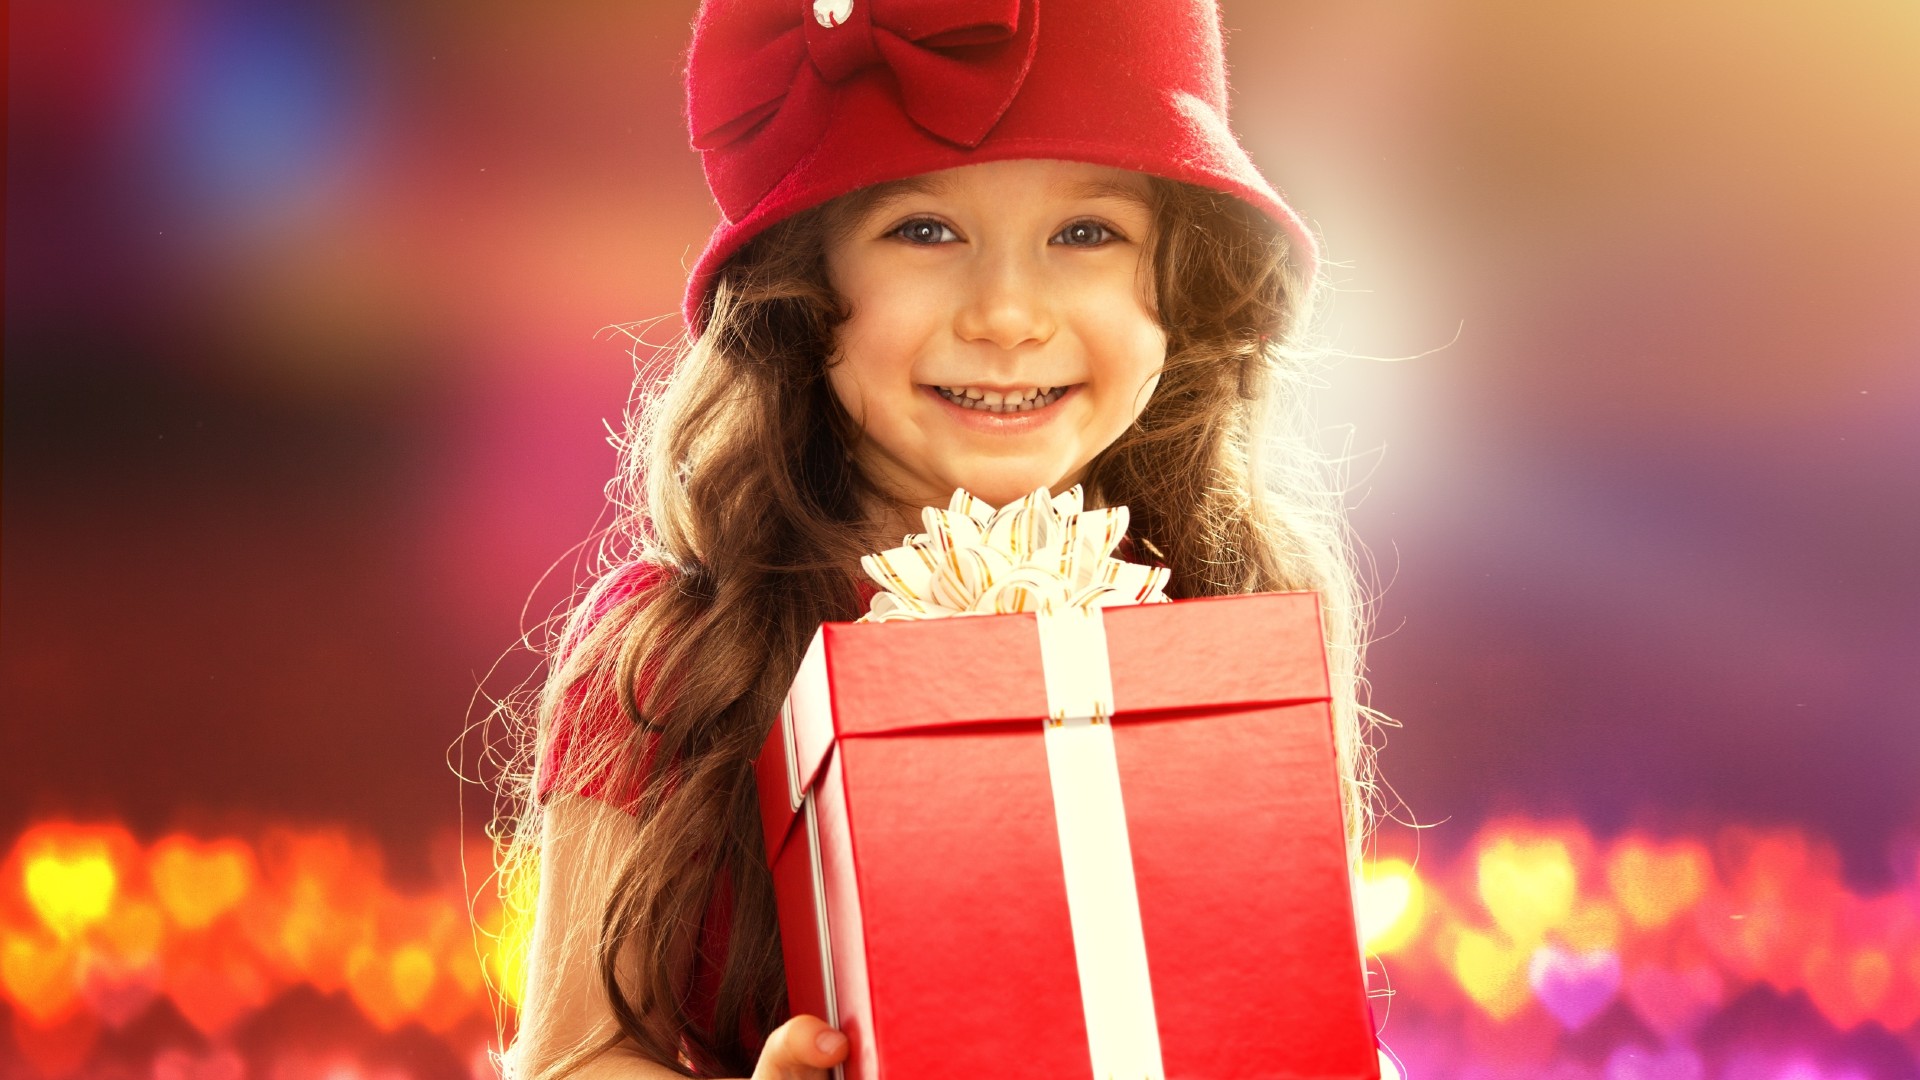 Все мы помним детство и как приятно было получать подарки.